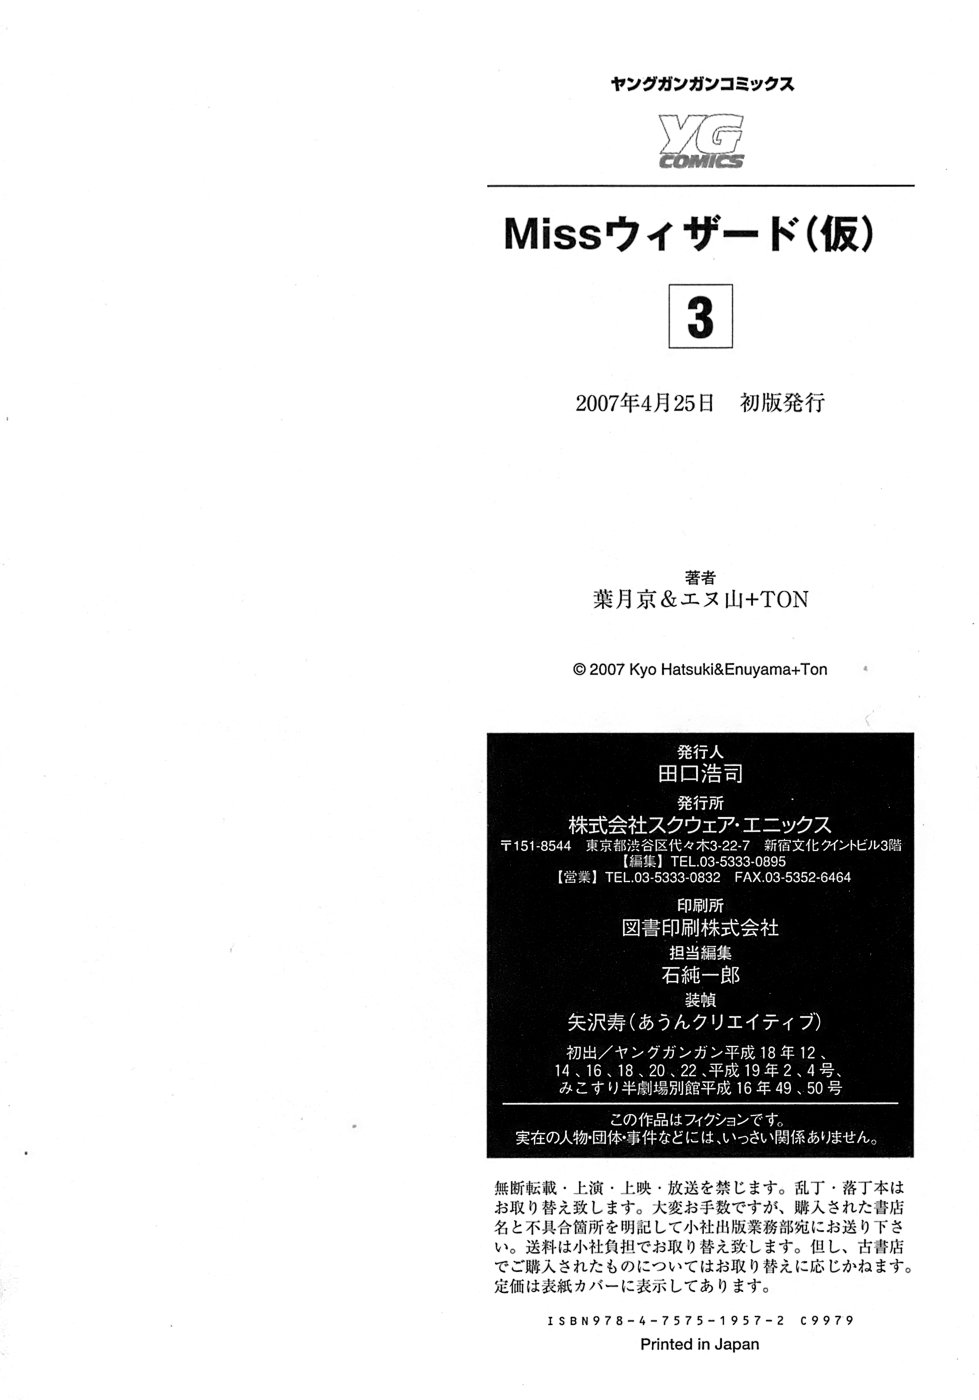 [Hatsuki Kyou] Miss Wizard (Kari) (3) [葉月京] Missウィザード(仮) (3)